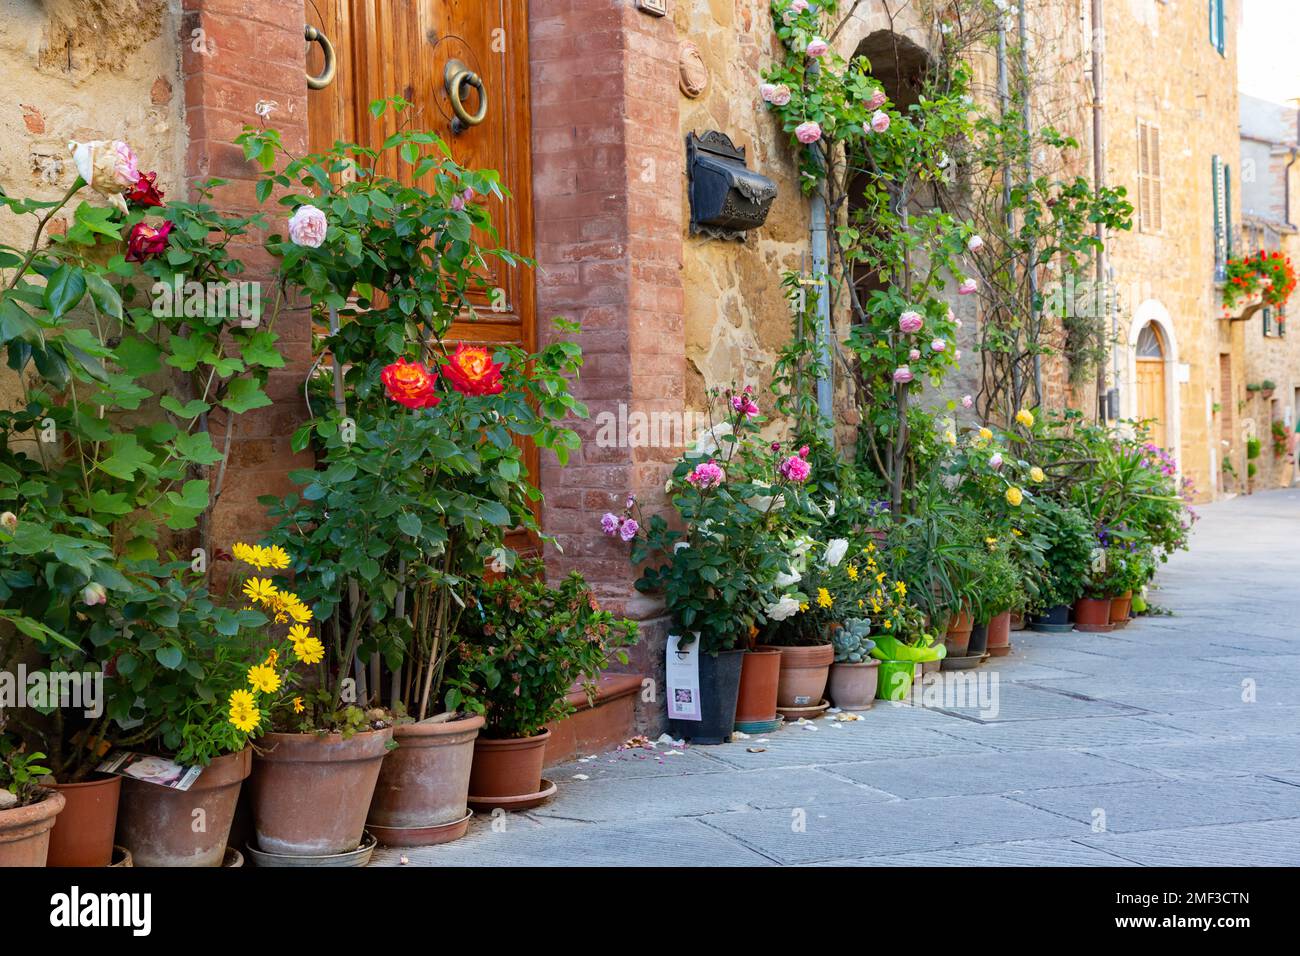 Plantes en pot en terre cuite alignées à l'extérieur des bâtiments en pierre dans le village pittoresque de Montisi, Toscane, Italie. Banque D'Images